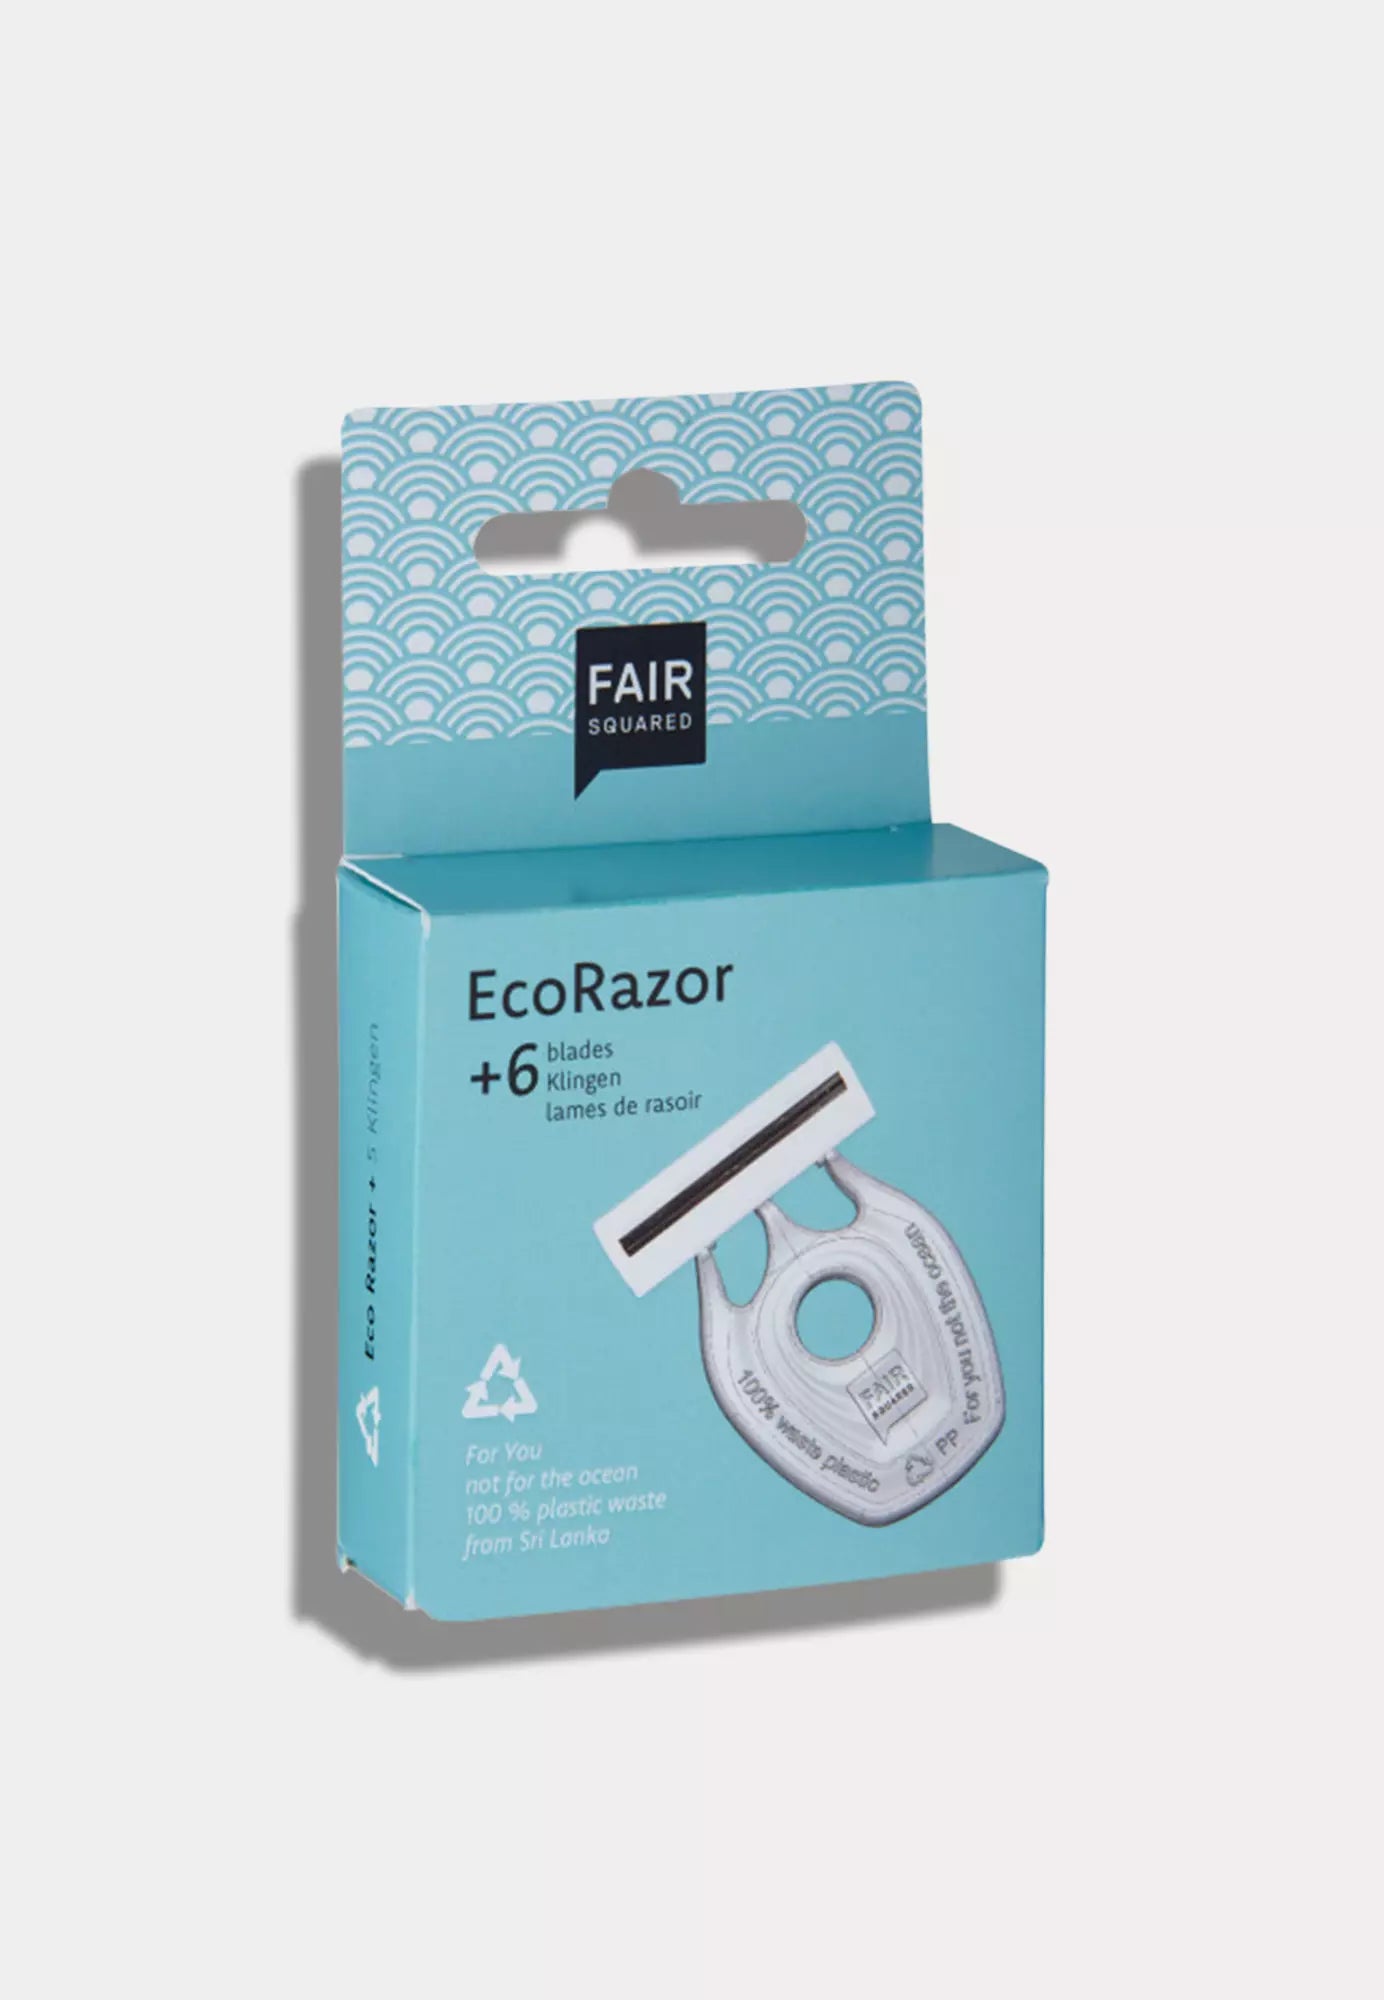 Fair Squared Rasierer, Upcycling Produkt aus Flaschendeckeln, mit 6 Ersatzklingen, CO2 neutral